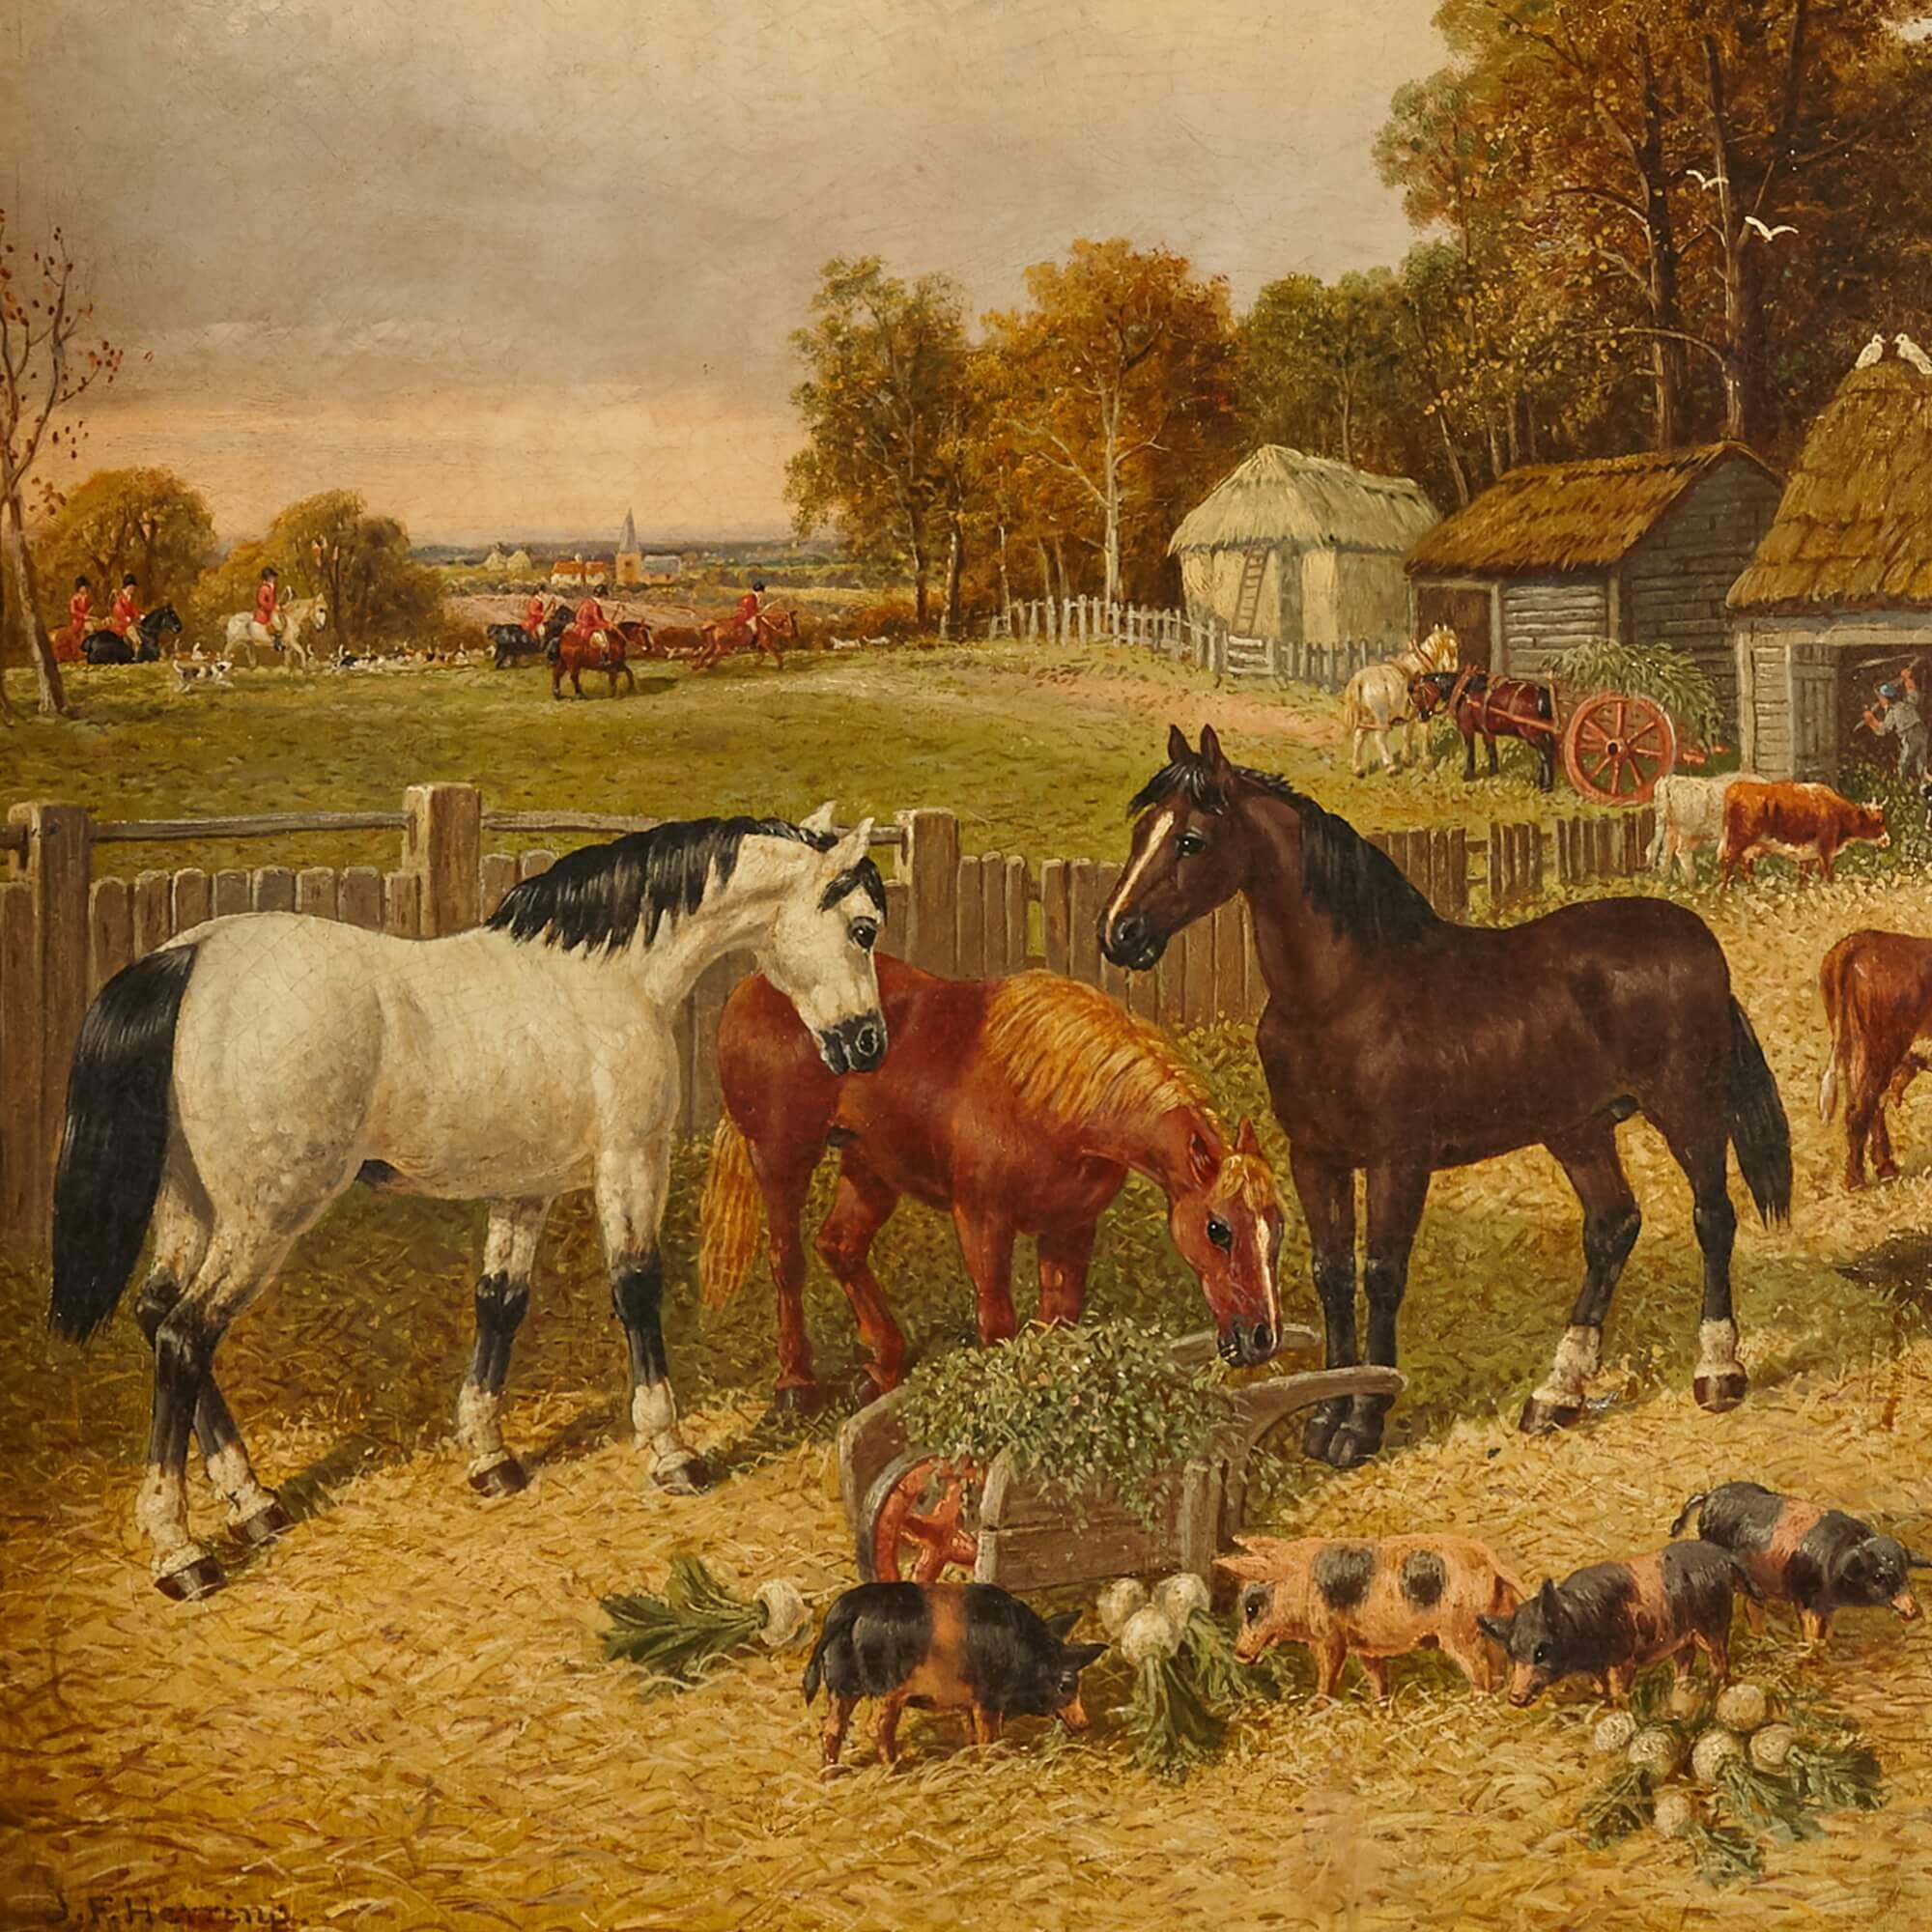 Gemälde von Pferden und Tieren aus dem Landhausstil von Herring the Younger (Braun), Landscape Painting, von John Frederick Herring Jr.